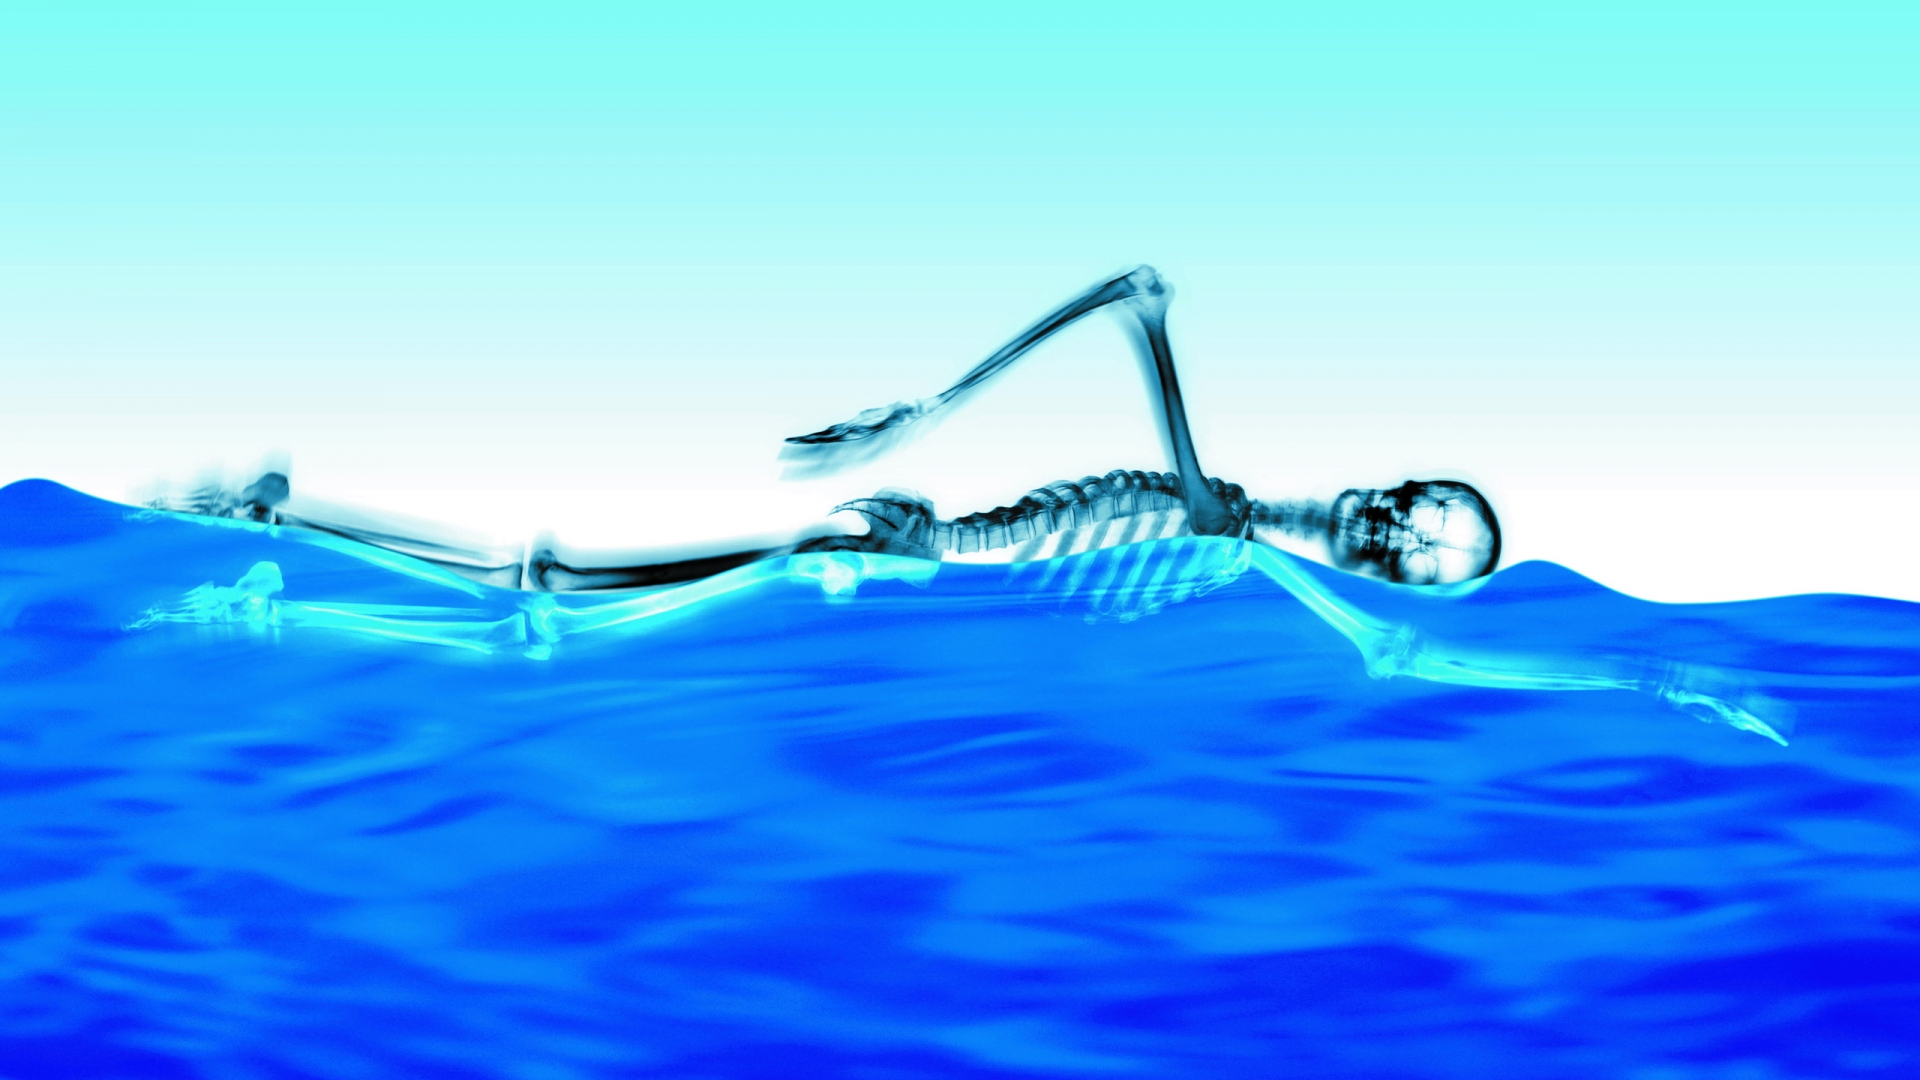 Swimming Skeleton for 1920 x 1080 HDTV 1080p resolution